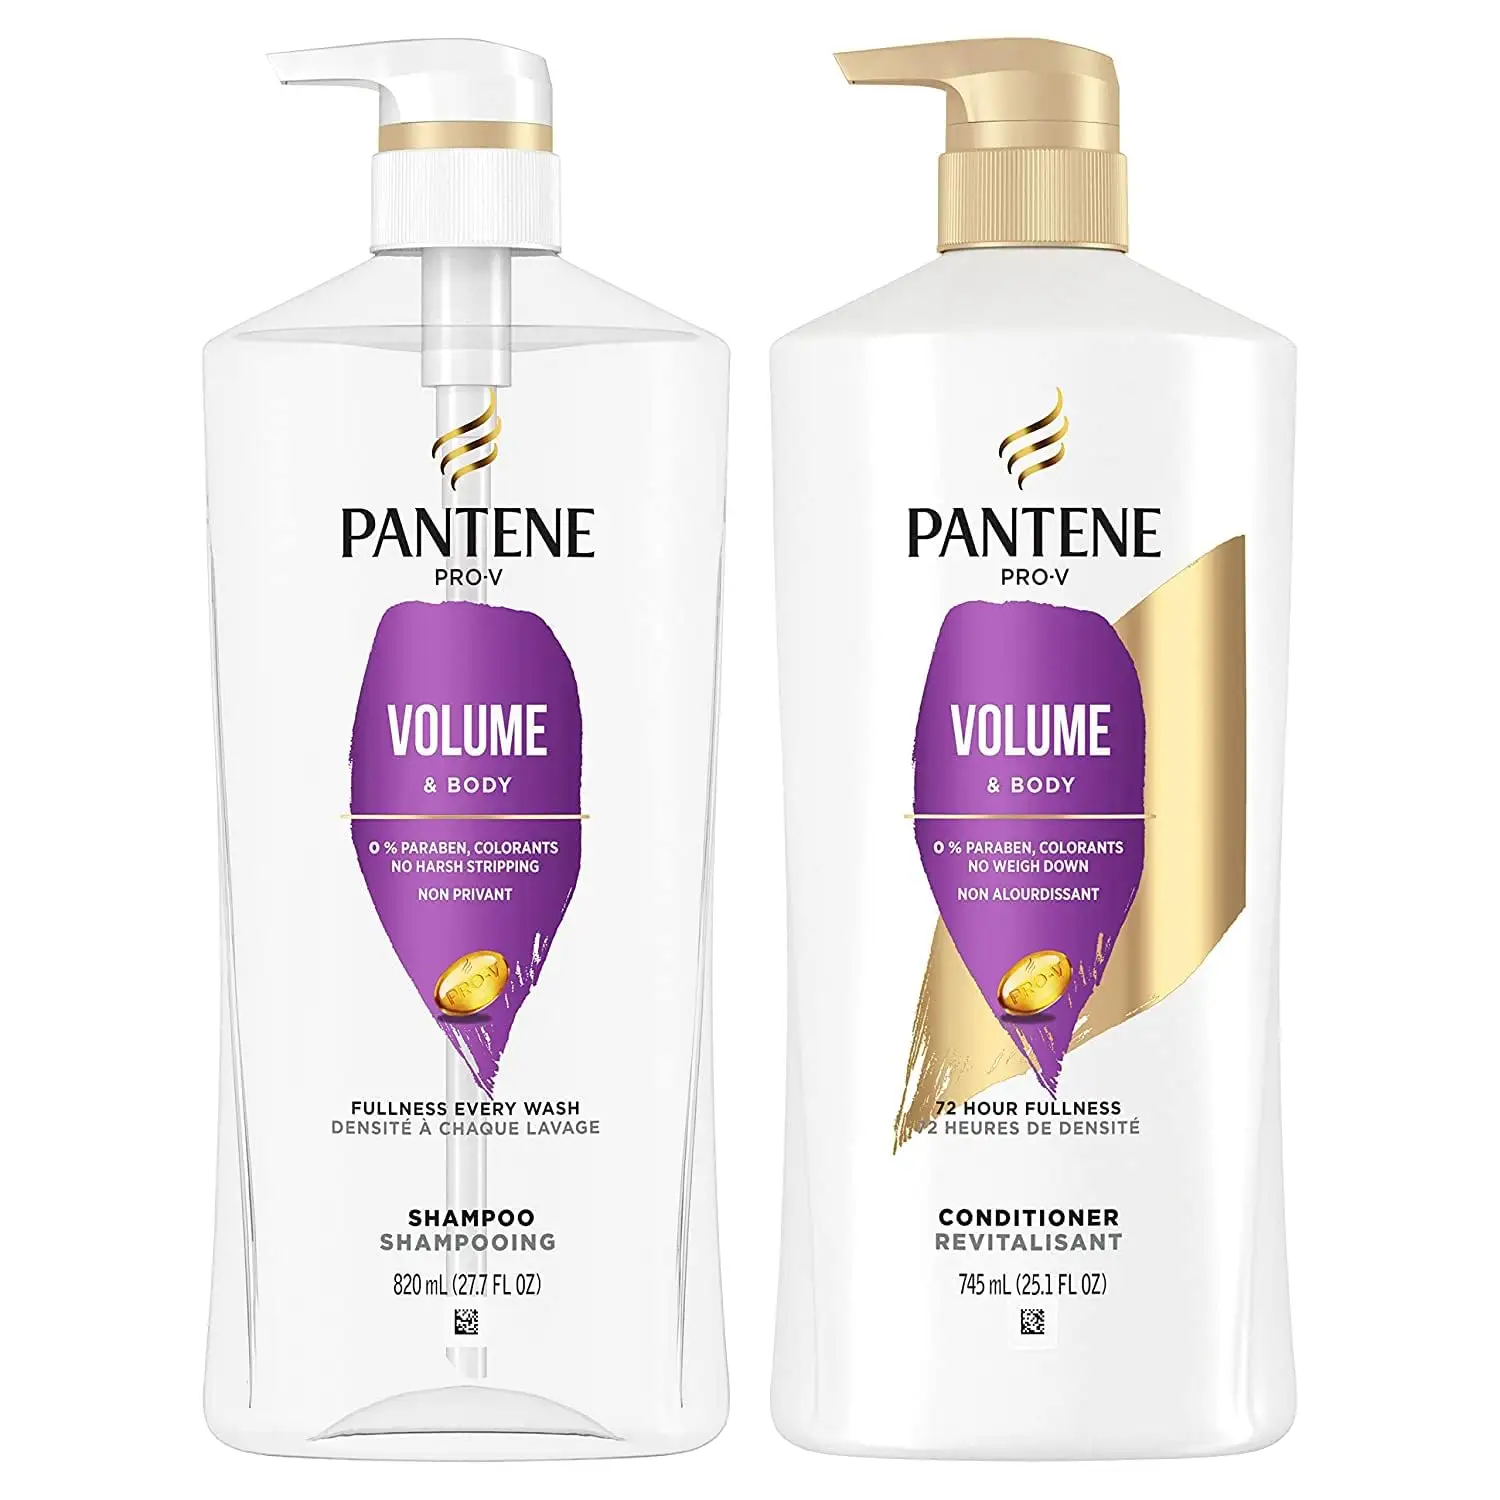 Beli grosir Pantene: rahasia untuk rambut cantik dan sehat